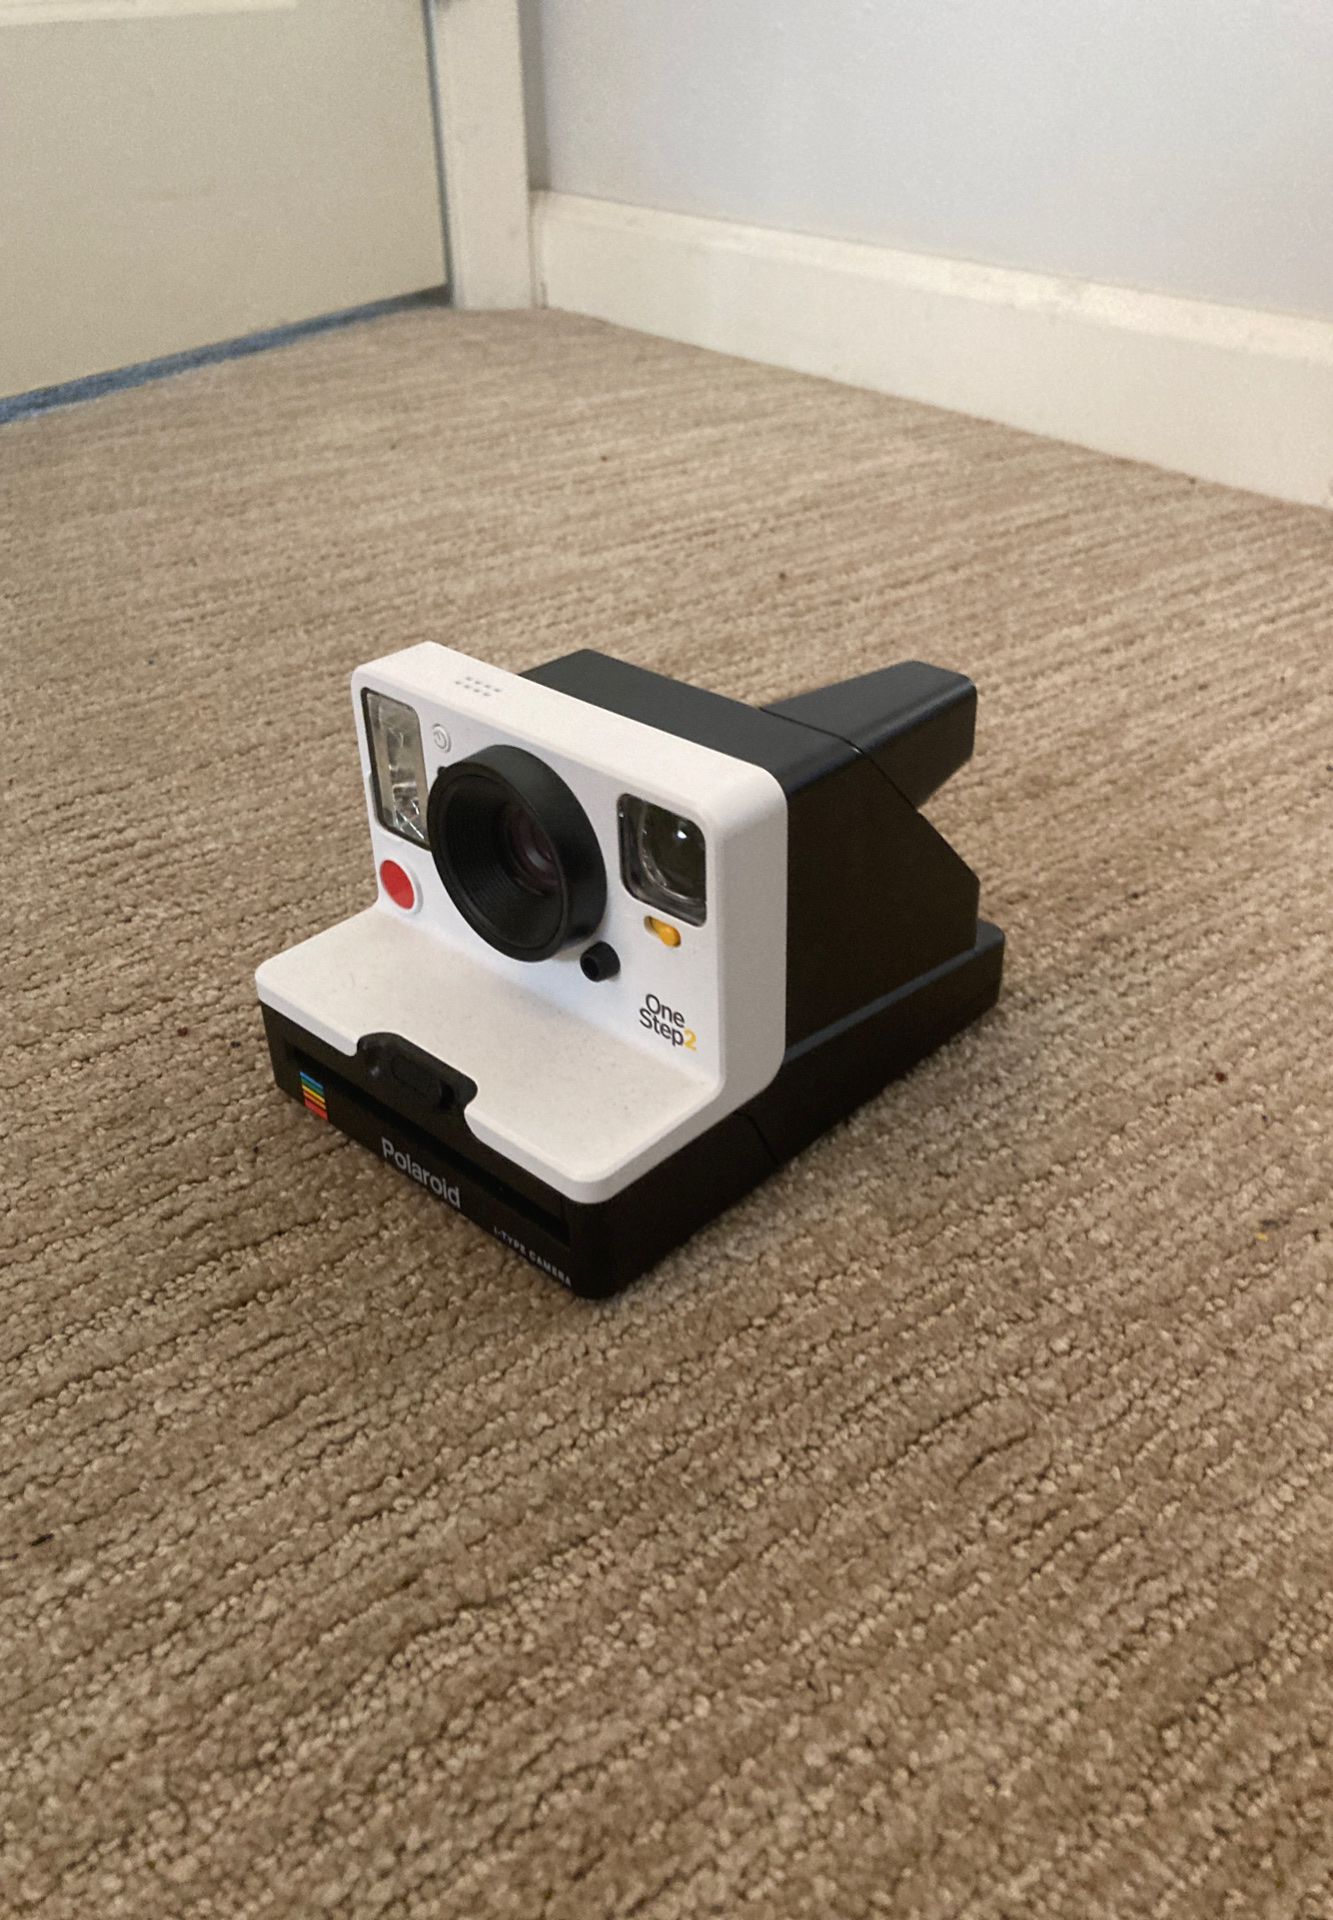 Polaroid I-type camera